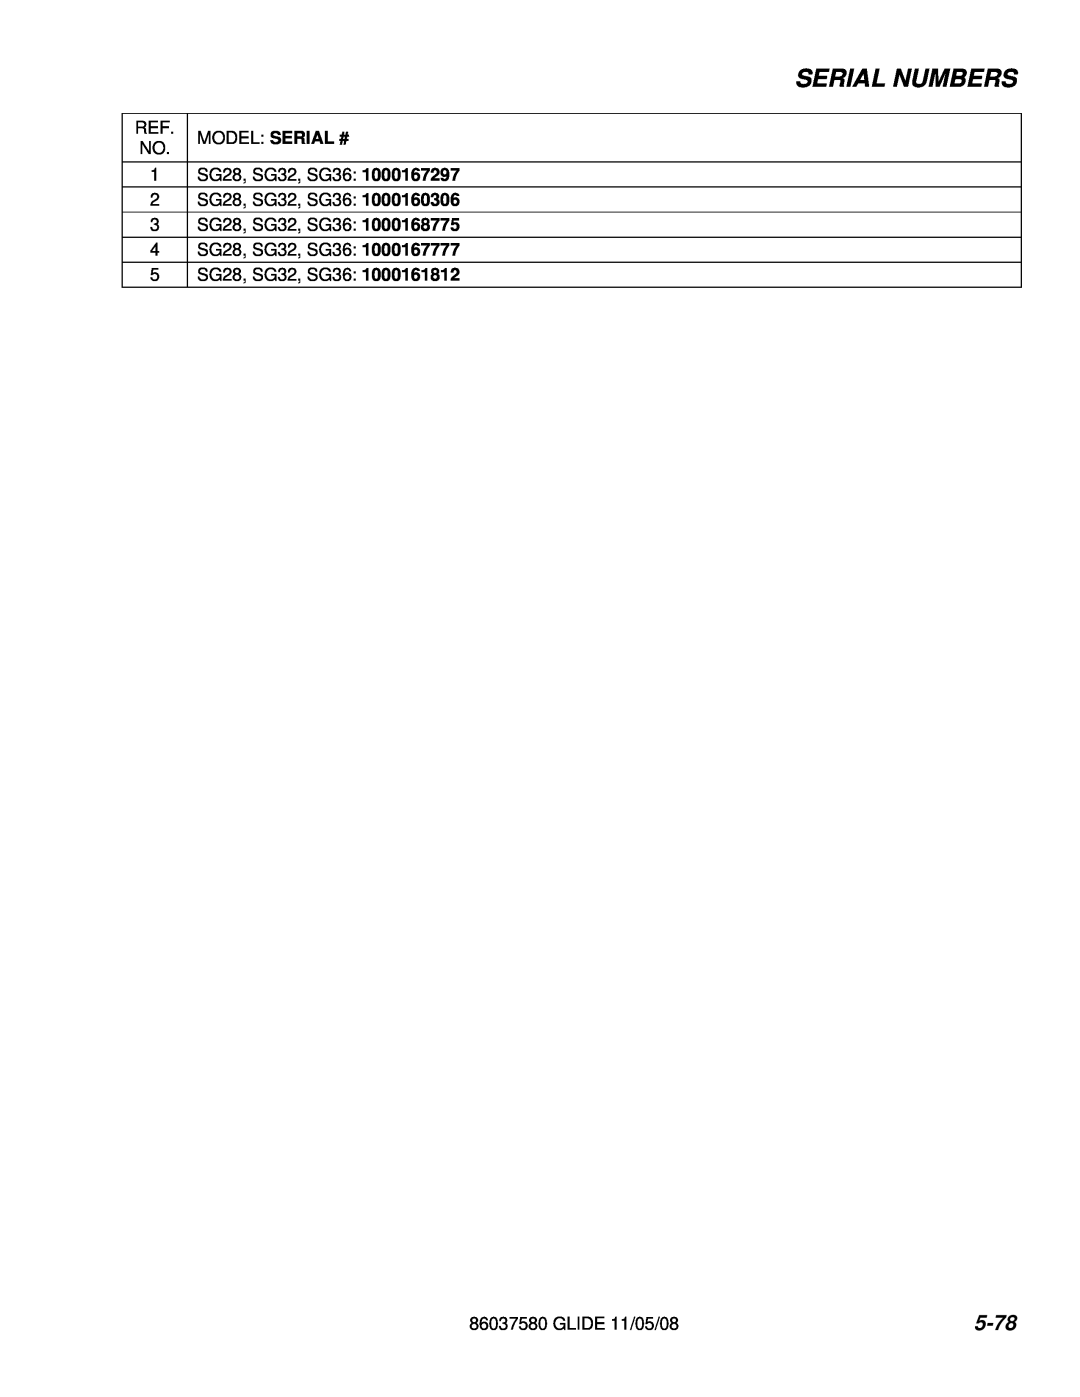 Windsor 86037580 manual Serial Numbers, 5-78, Model Serial # 